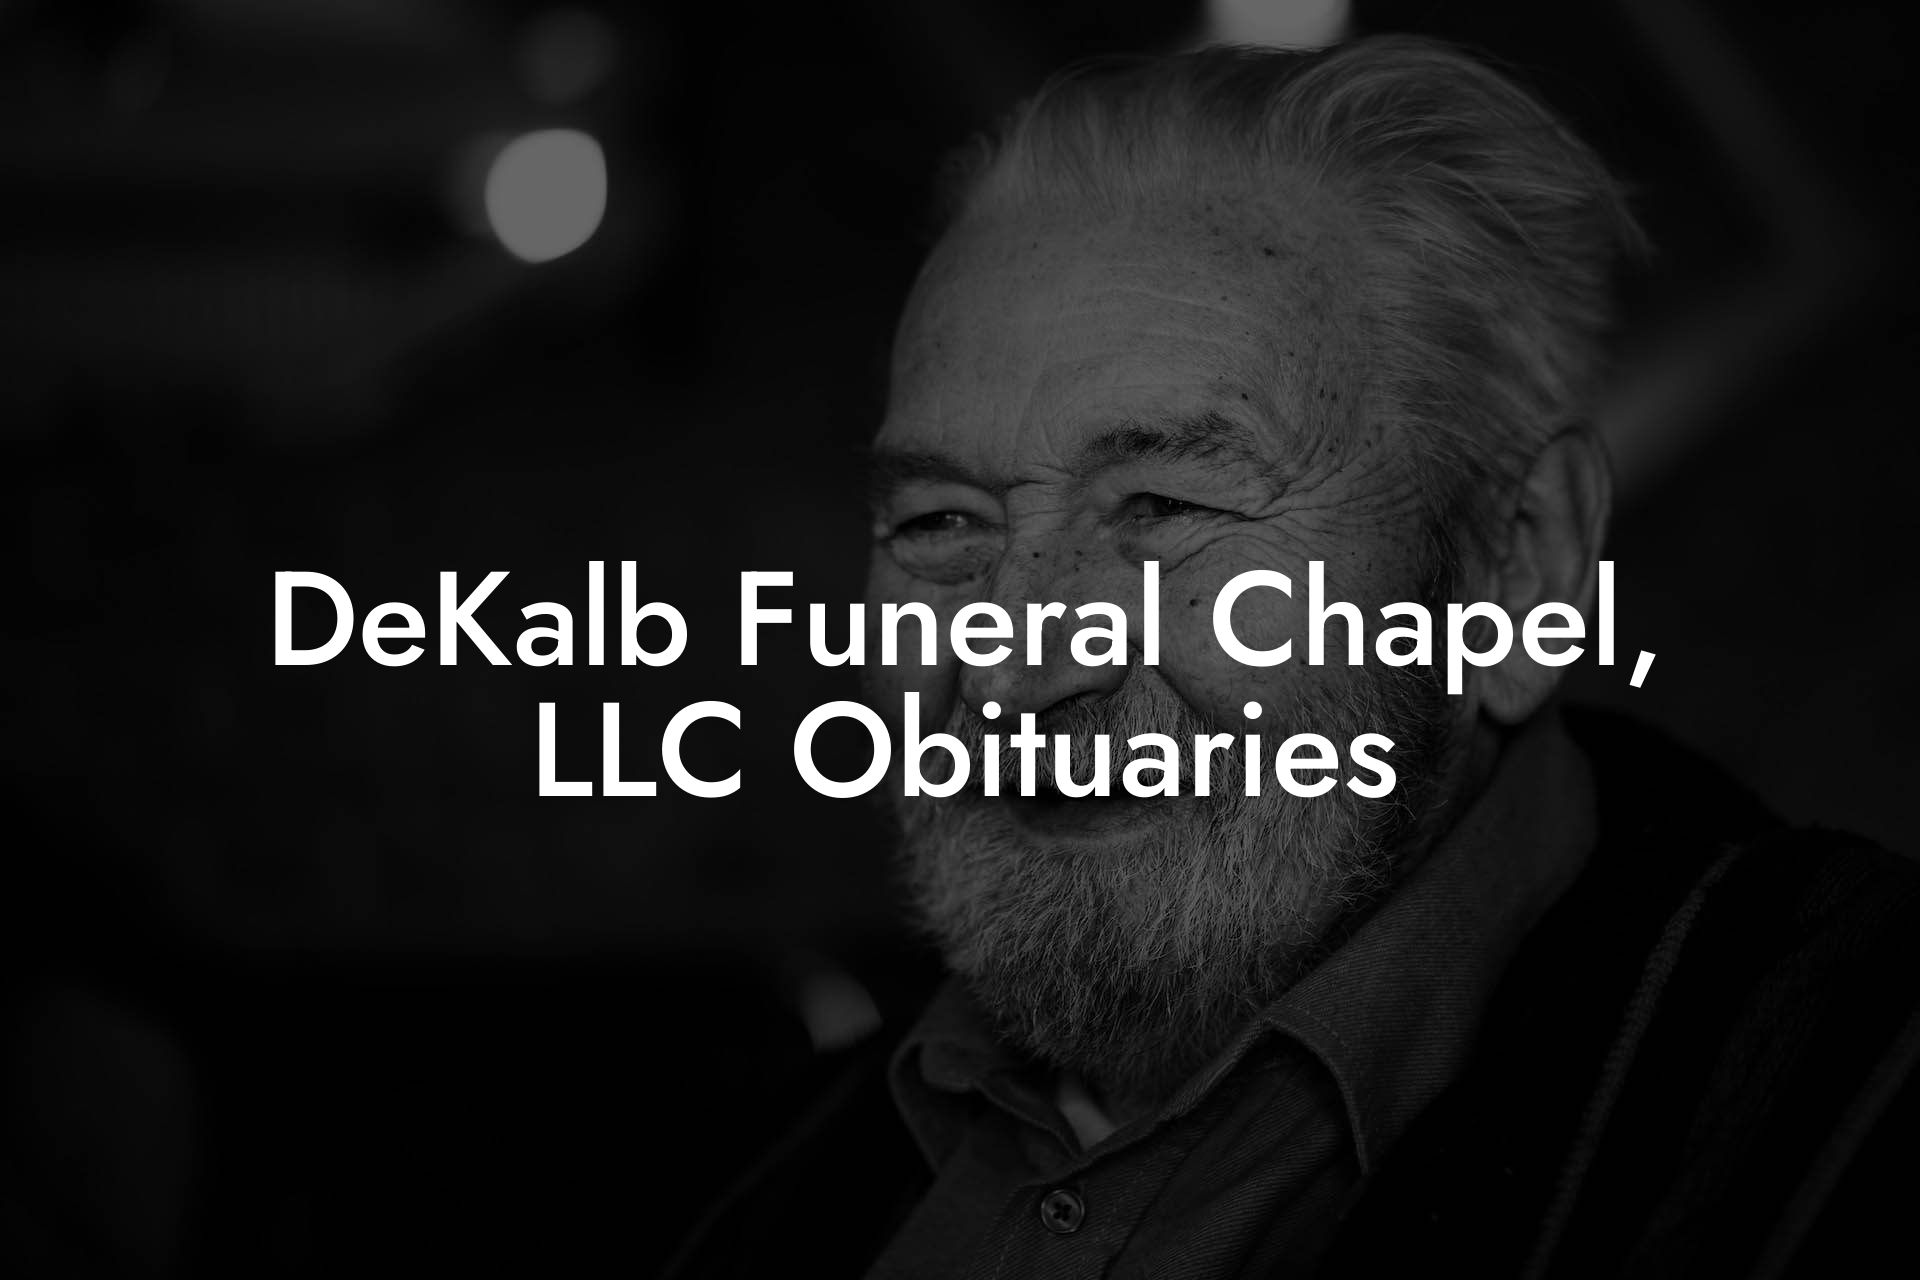 DeKalb Funeral Chapel, LLC Obituaries